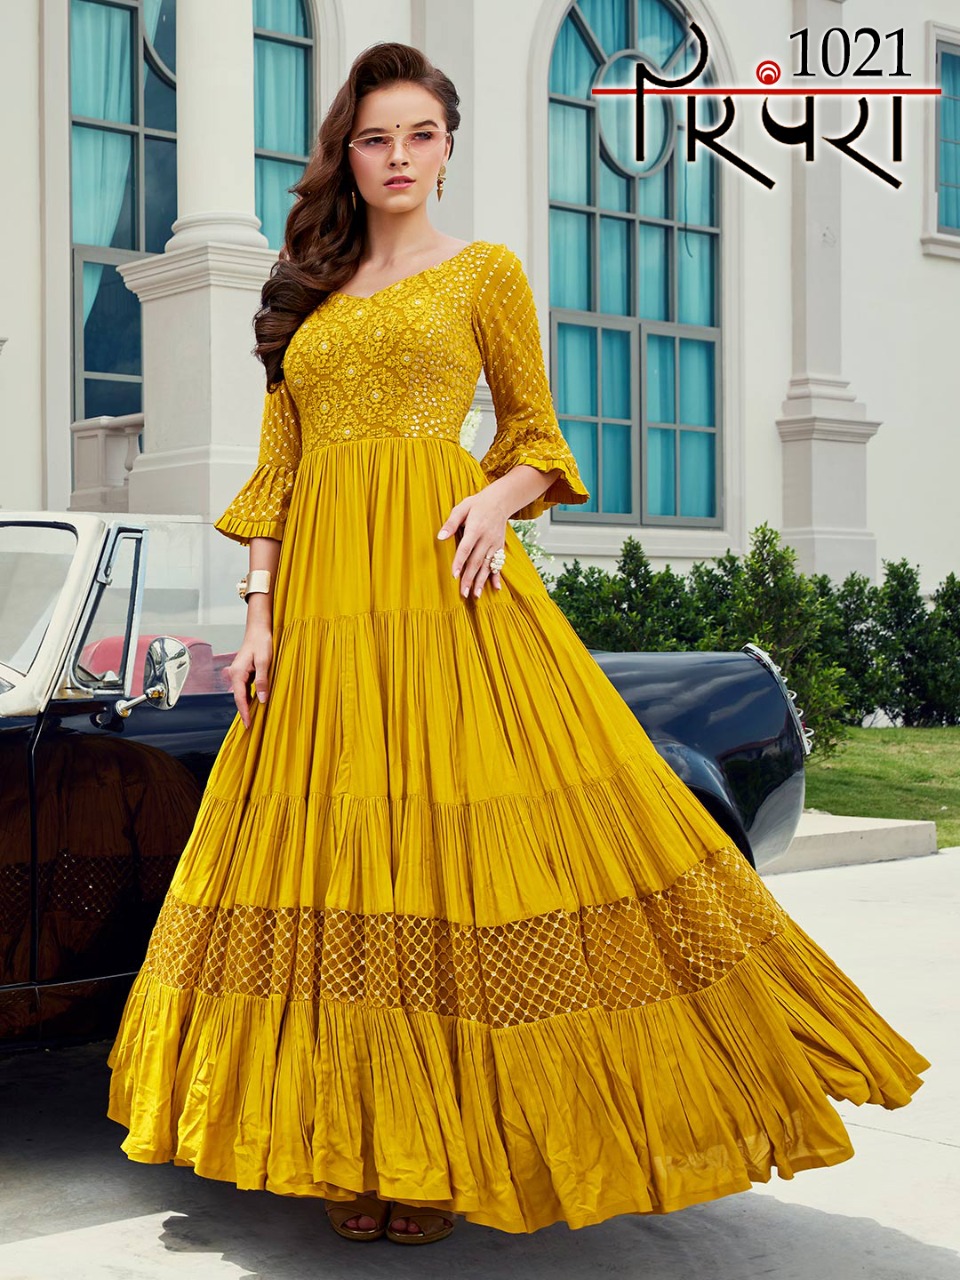 BridalTrunk - Online Indian Multi Designer Fashion Shopping Buy Indian  Dresses Online, Shop Indian Designer Gowns UK - Starting £450